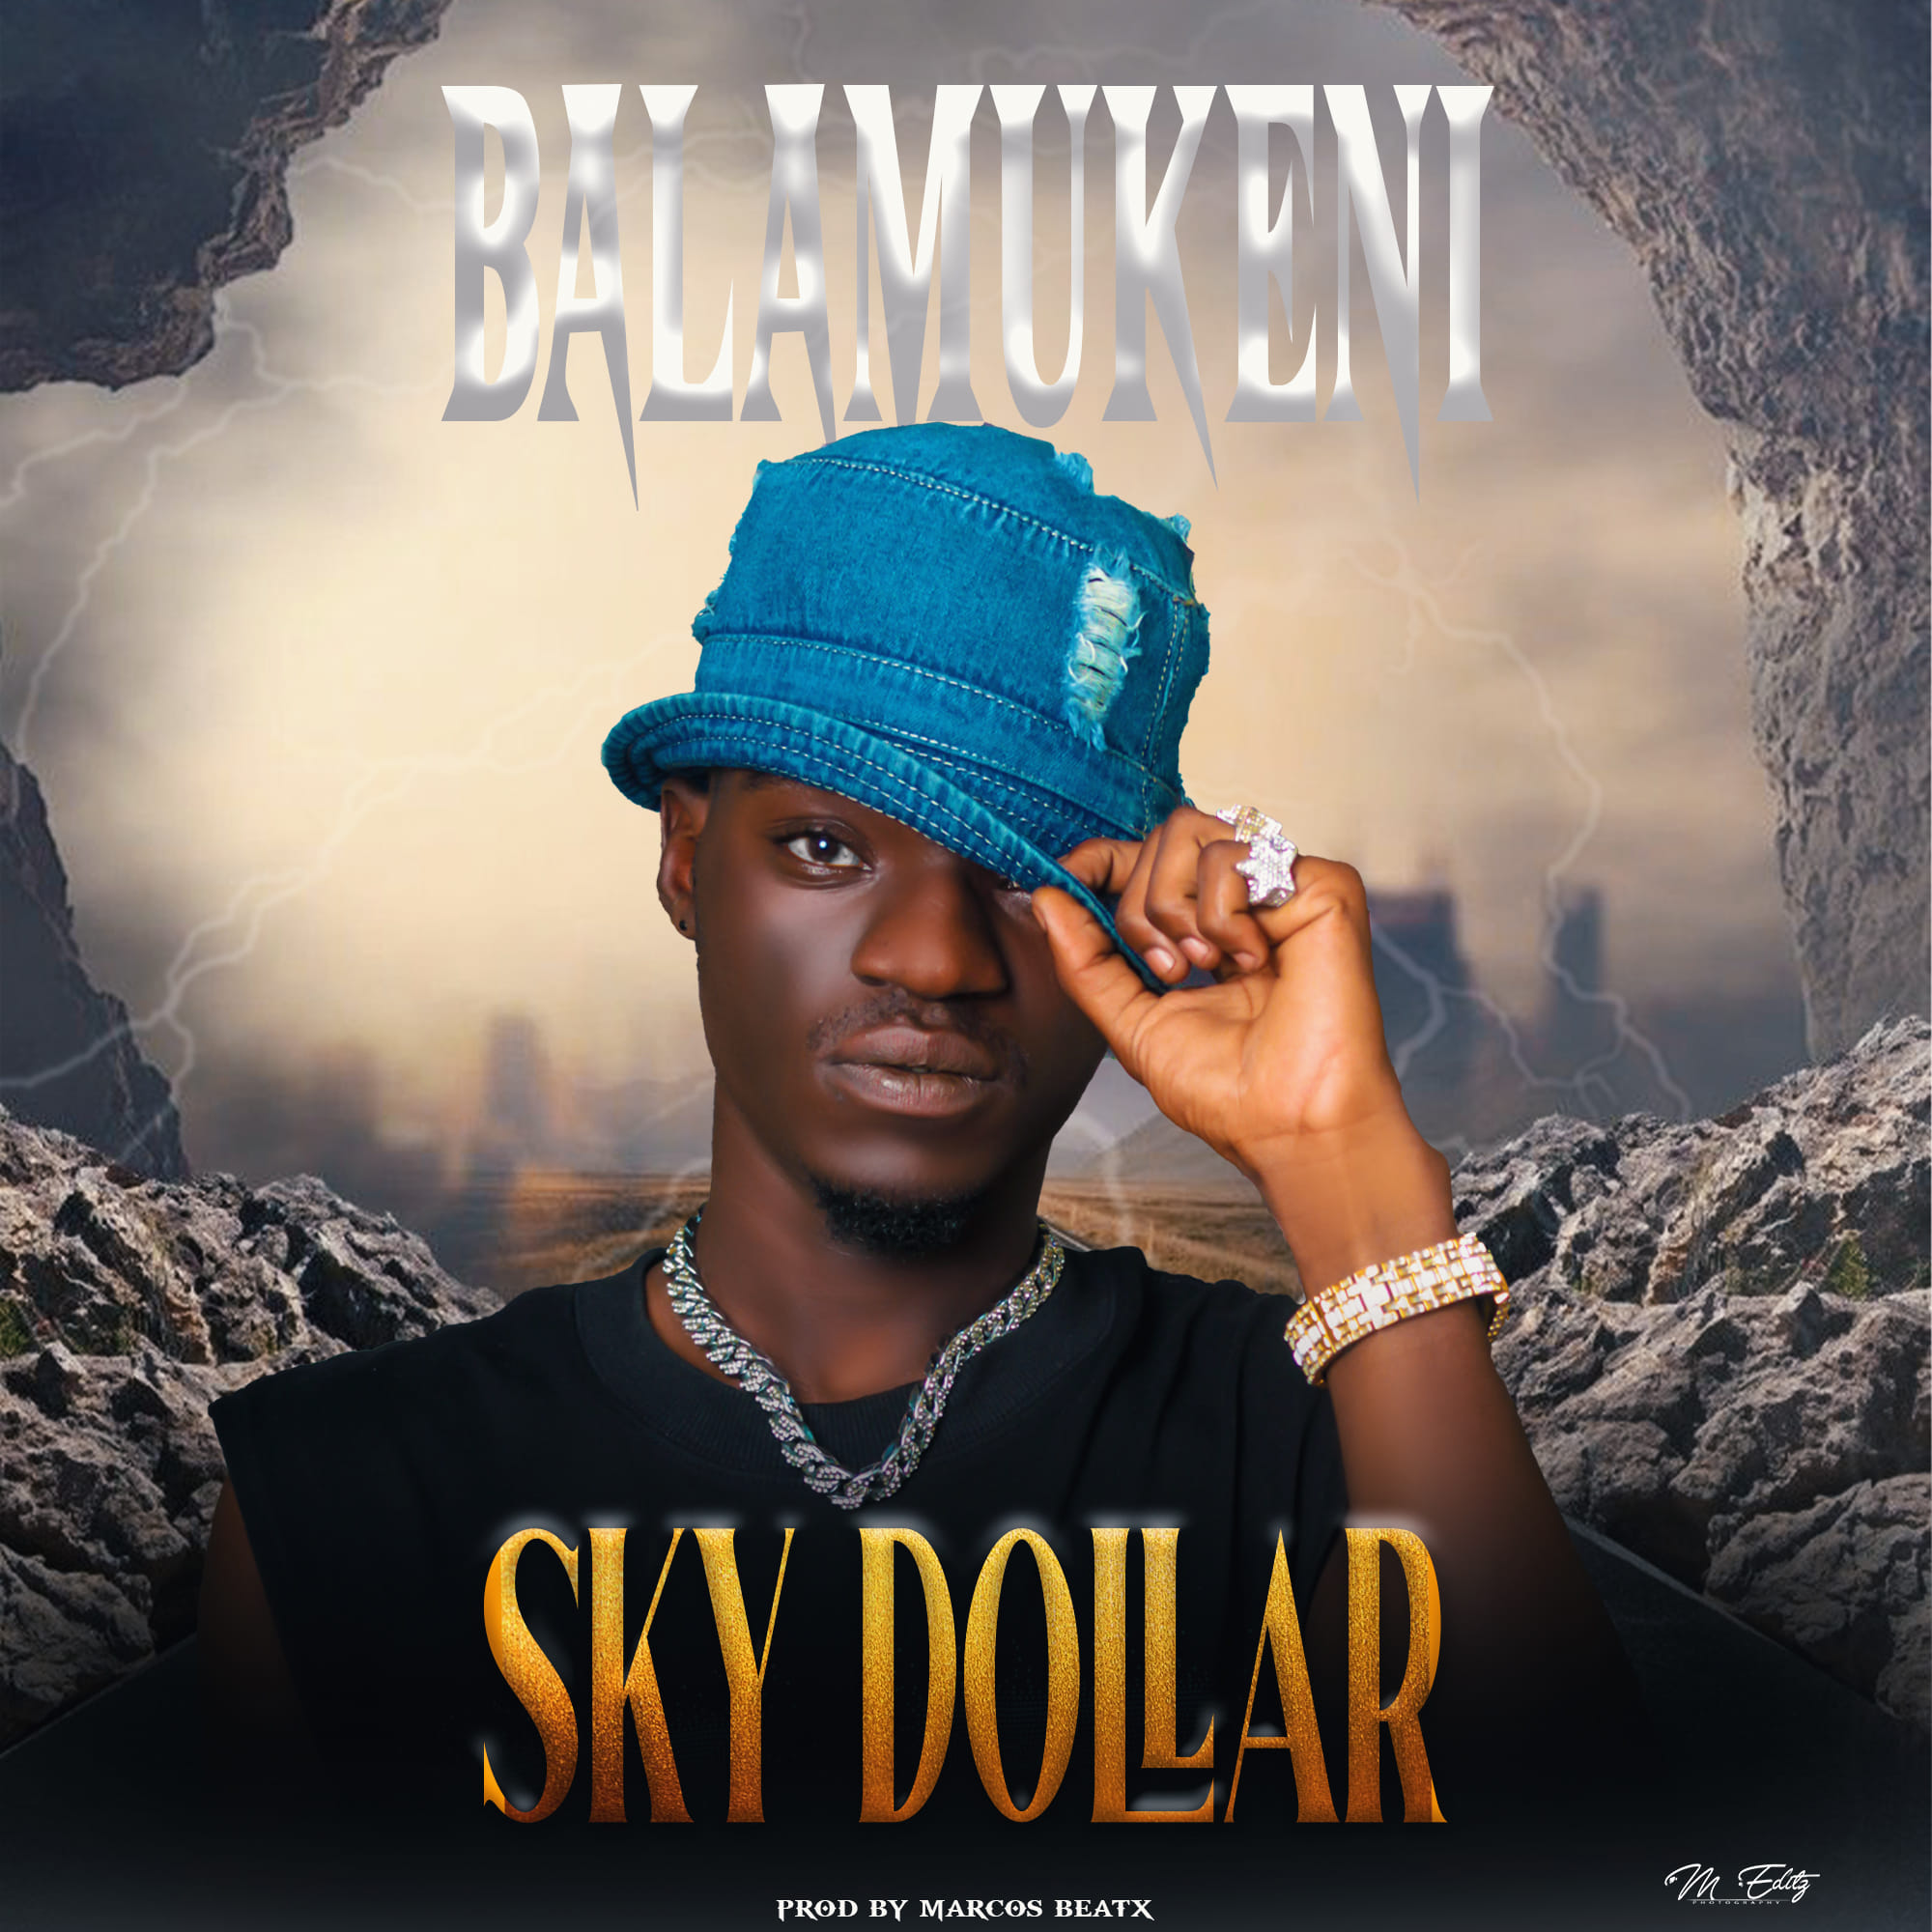 Sky Dollar - Balamukeni